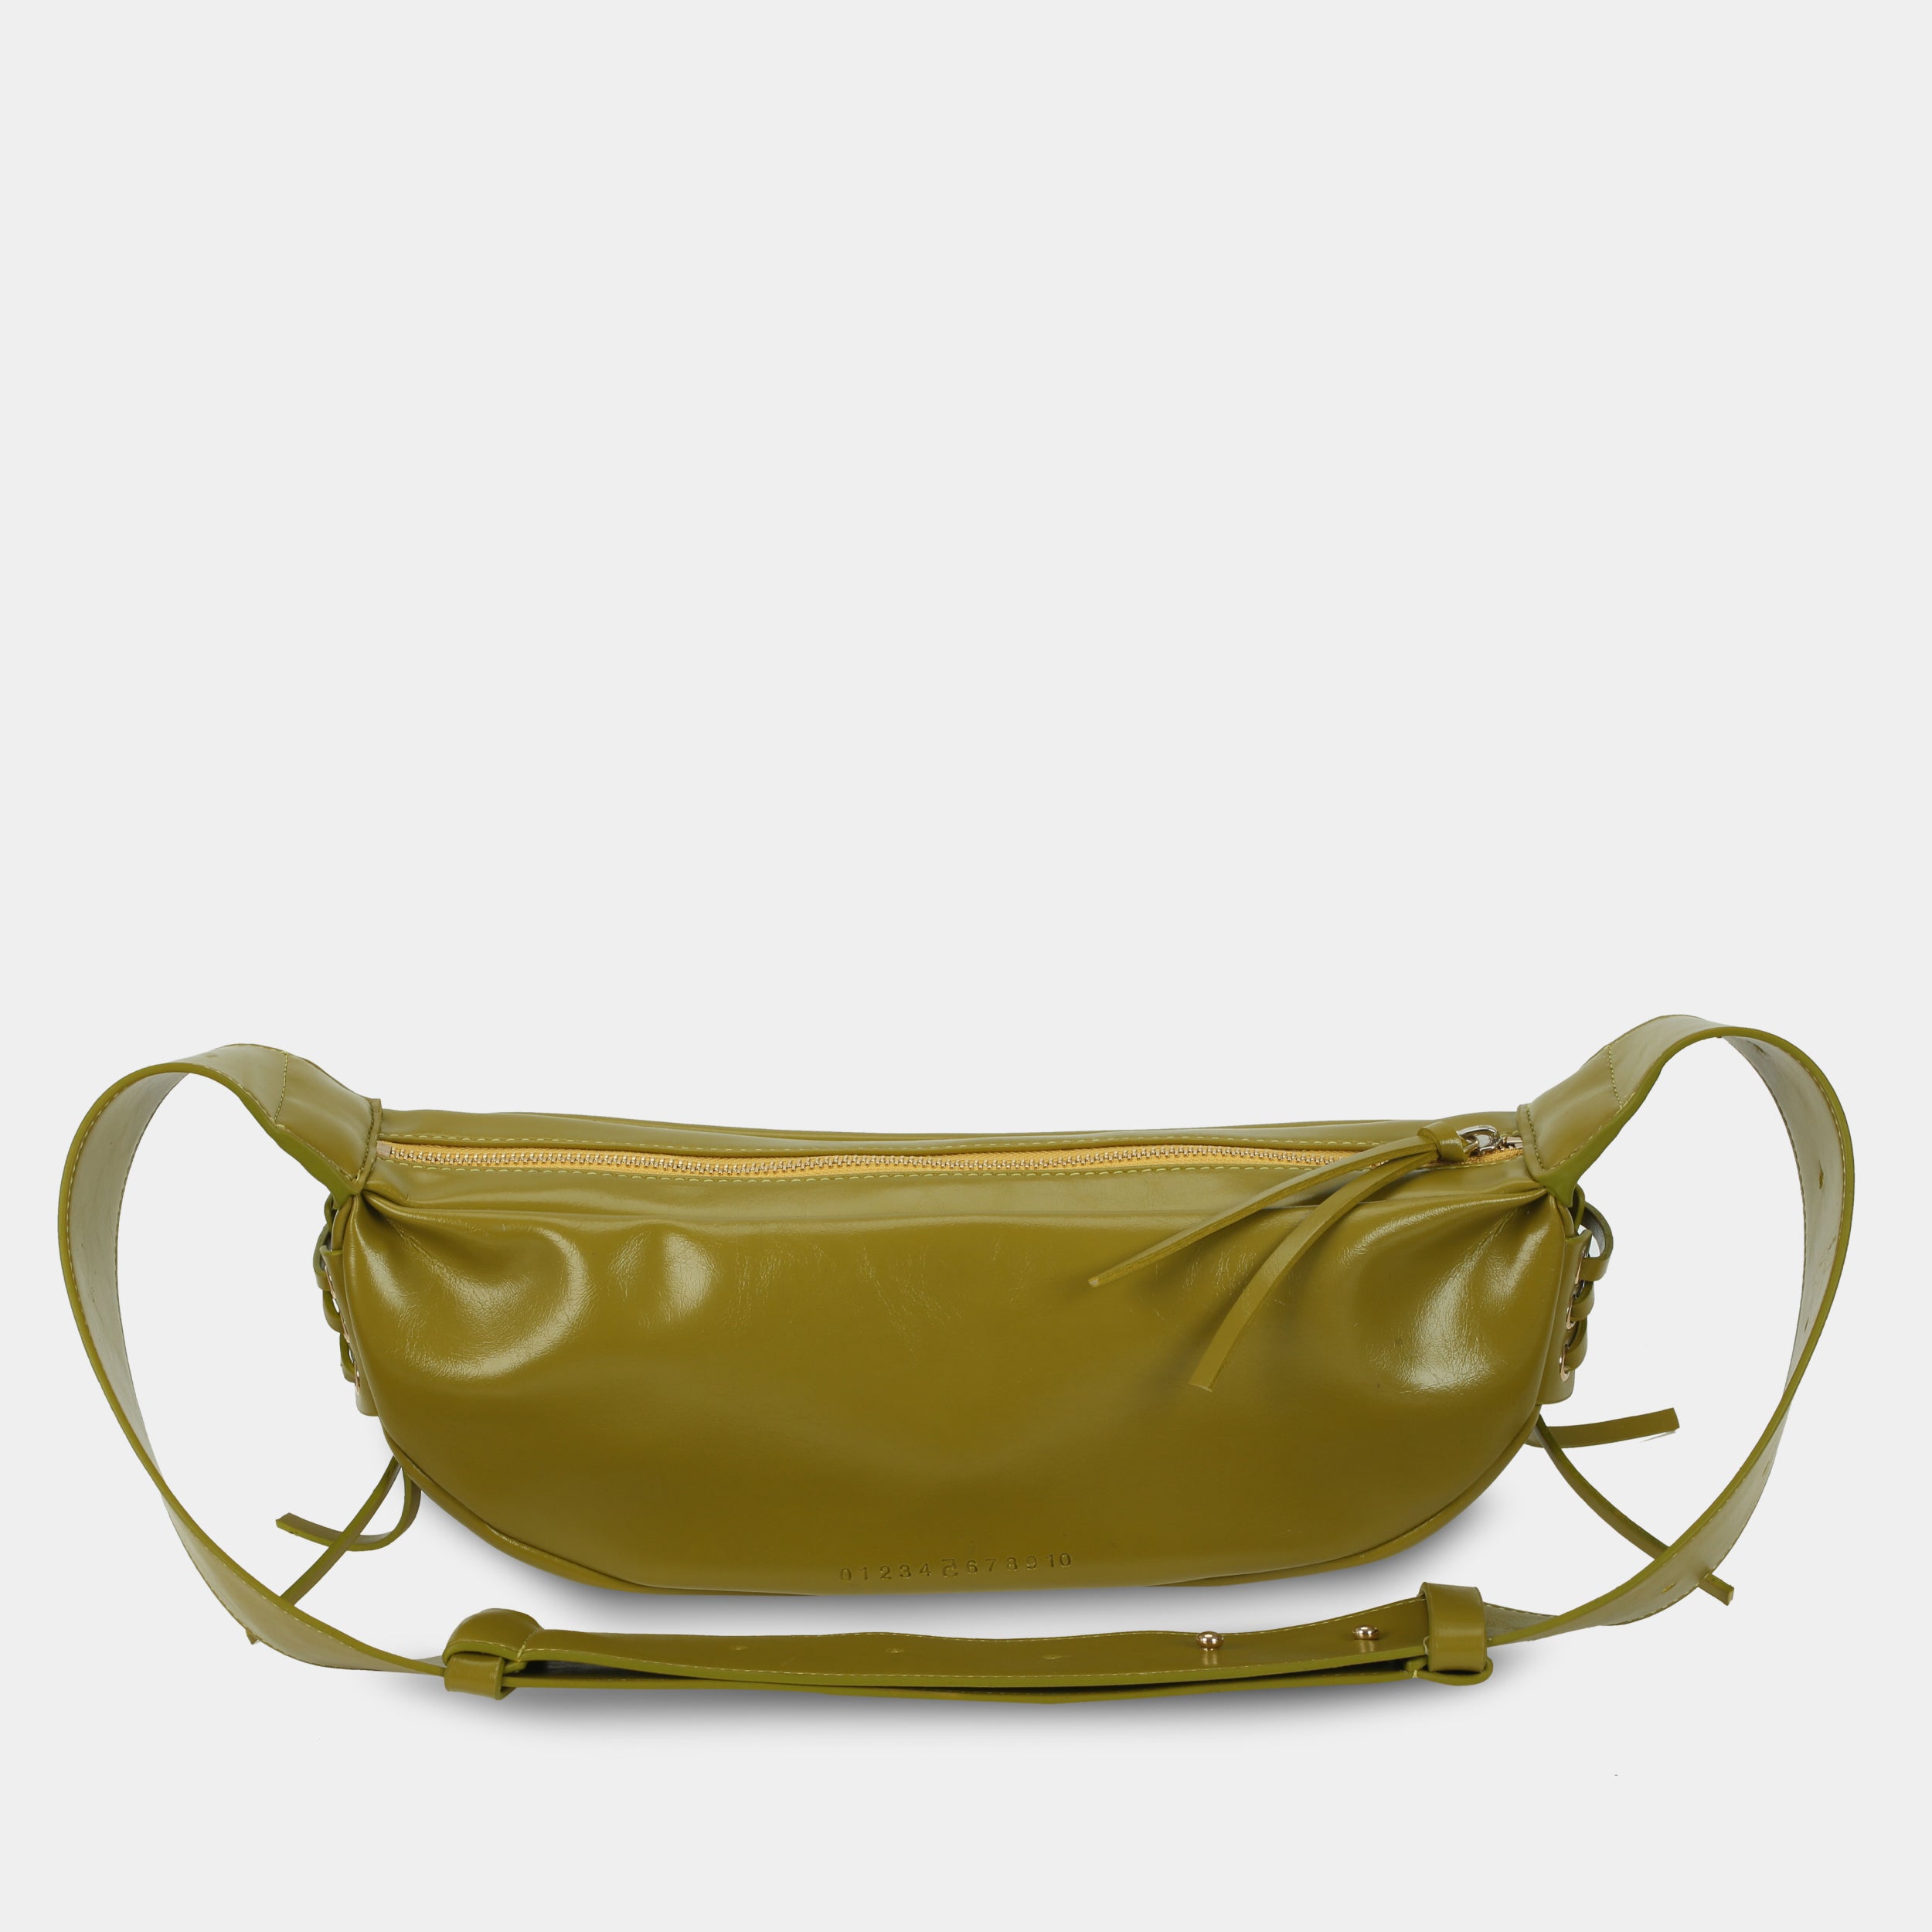 Túi xách LACE size lớn (M) màu vàng dưa cải